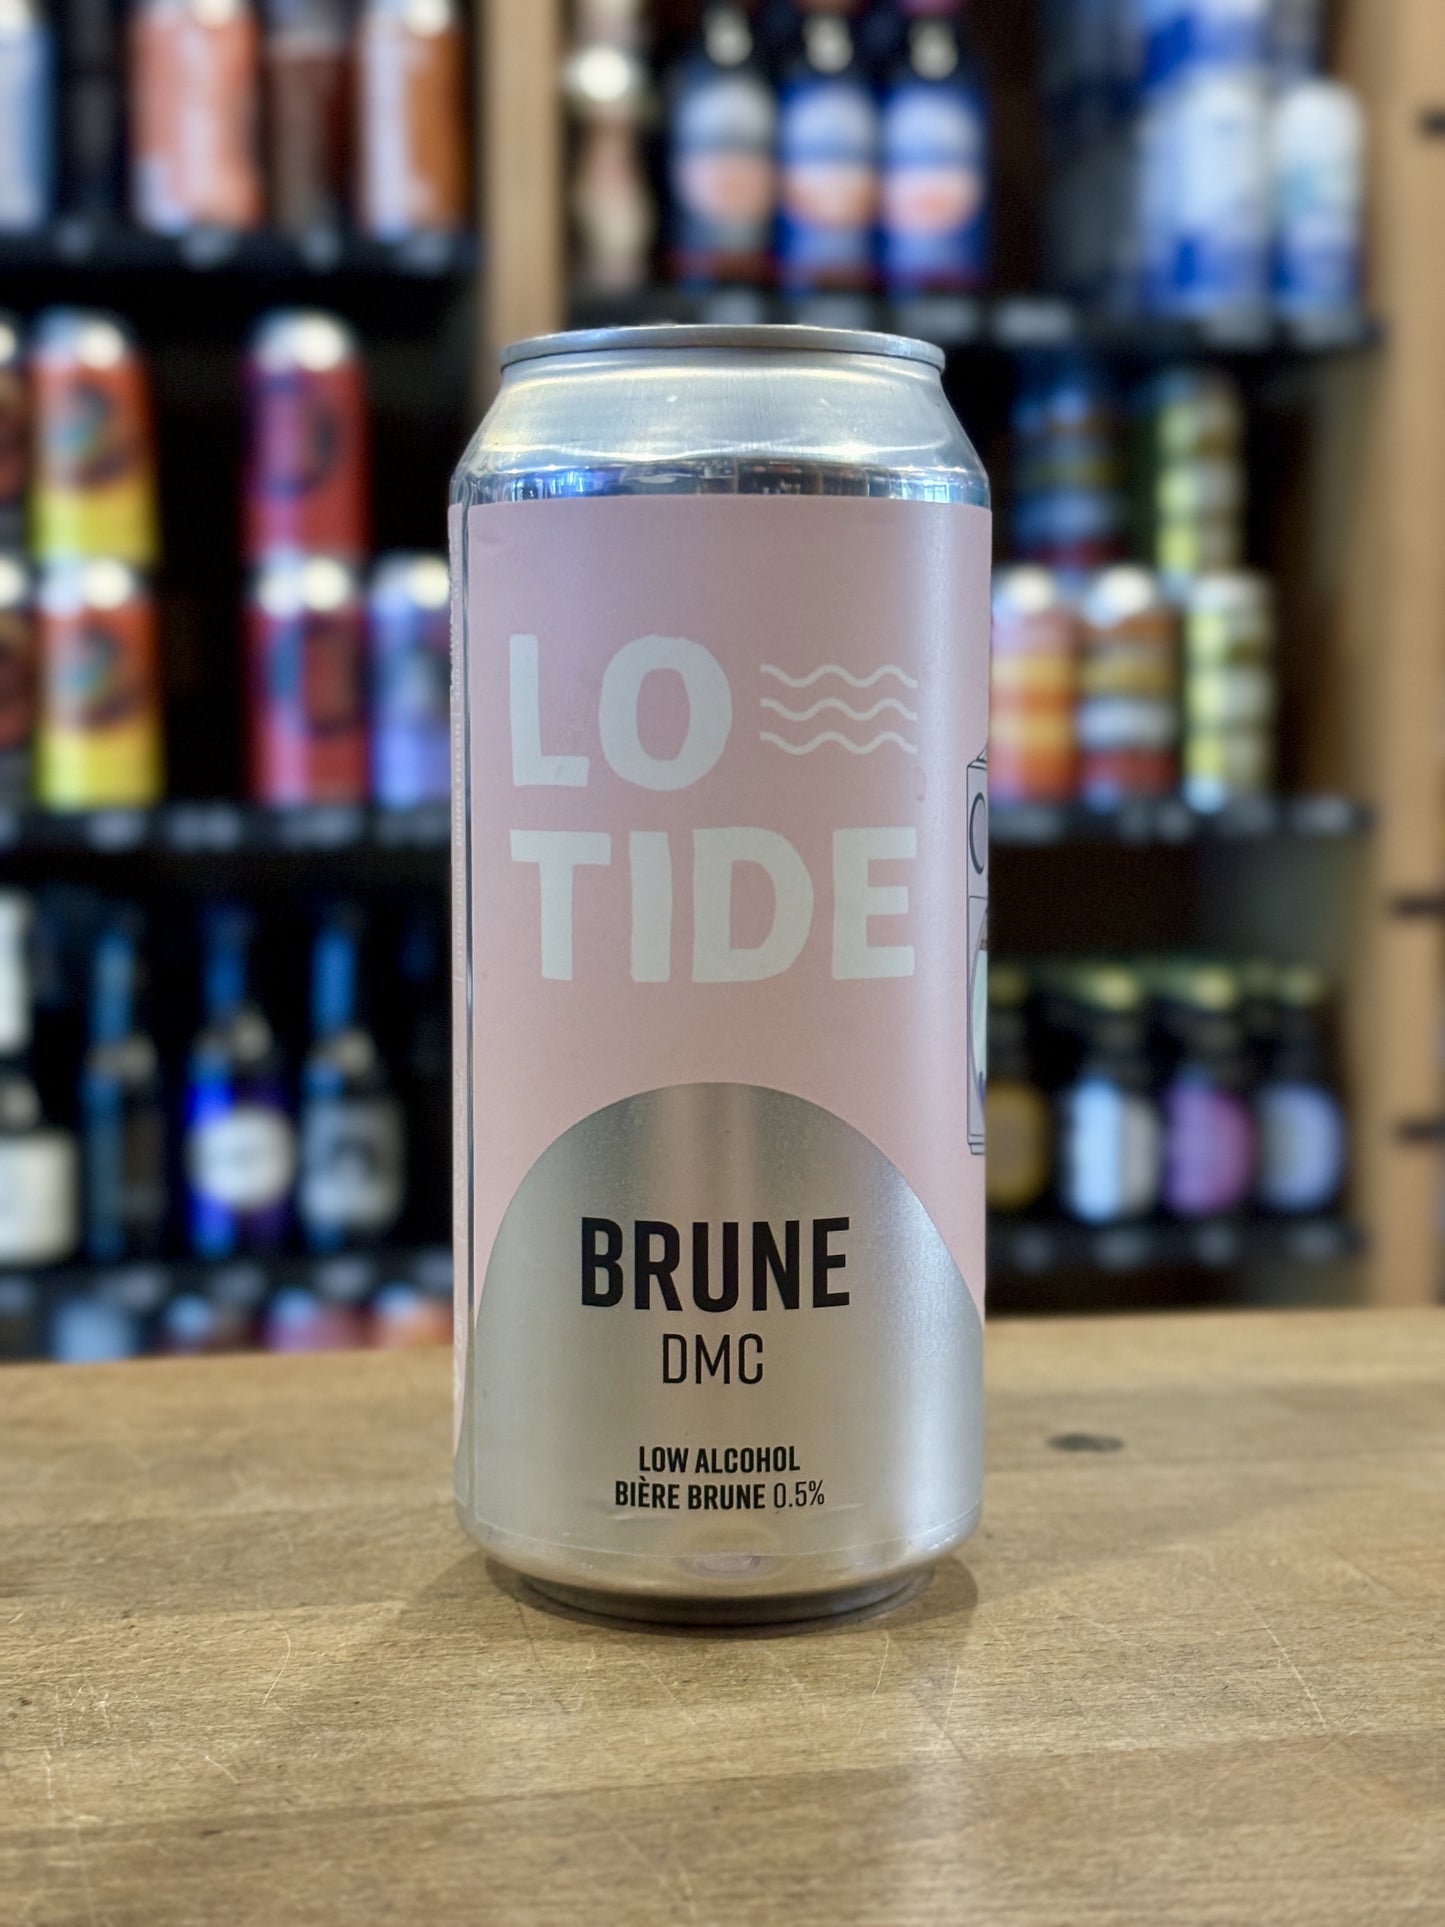 Low Tide Brune DMC